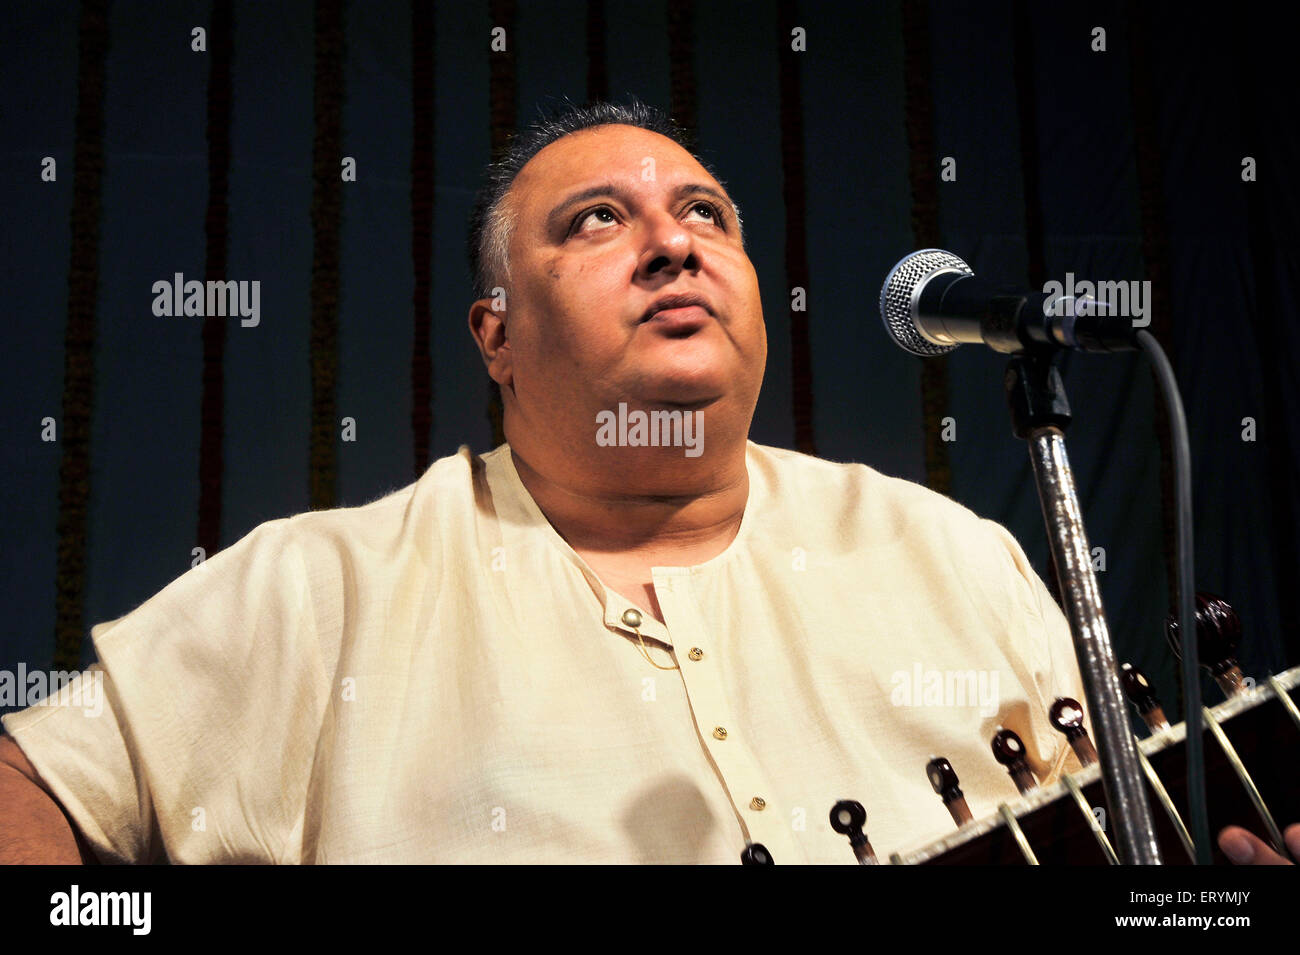 Musicien joueur de sitar indien classique Ustad Shujaat Khan Mumbai Maharashtra Inde Asie Banque D'Images